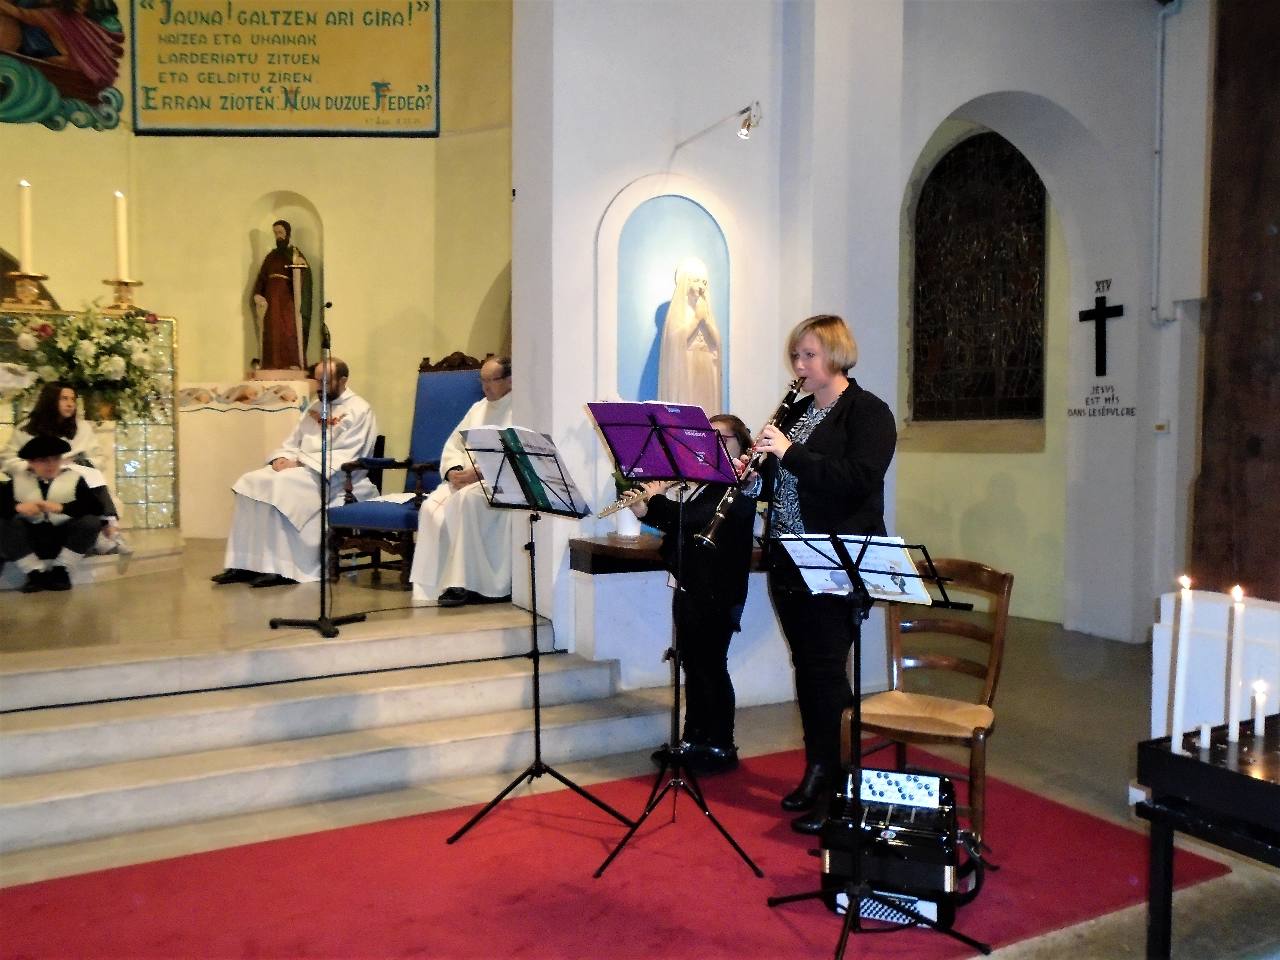 François et Jean sont satisfaits - Méditation musicale, avant la proclamation de l'évangile, par Sandrine et sa fille Chloé